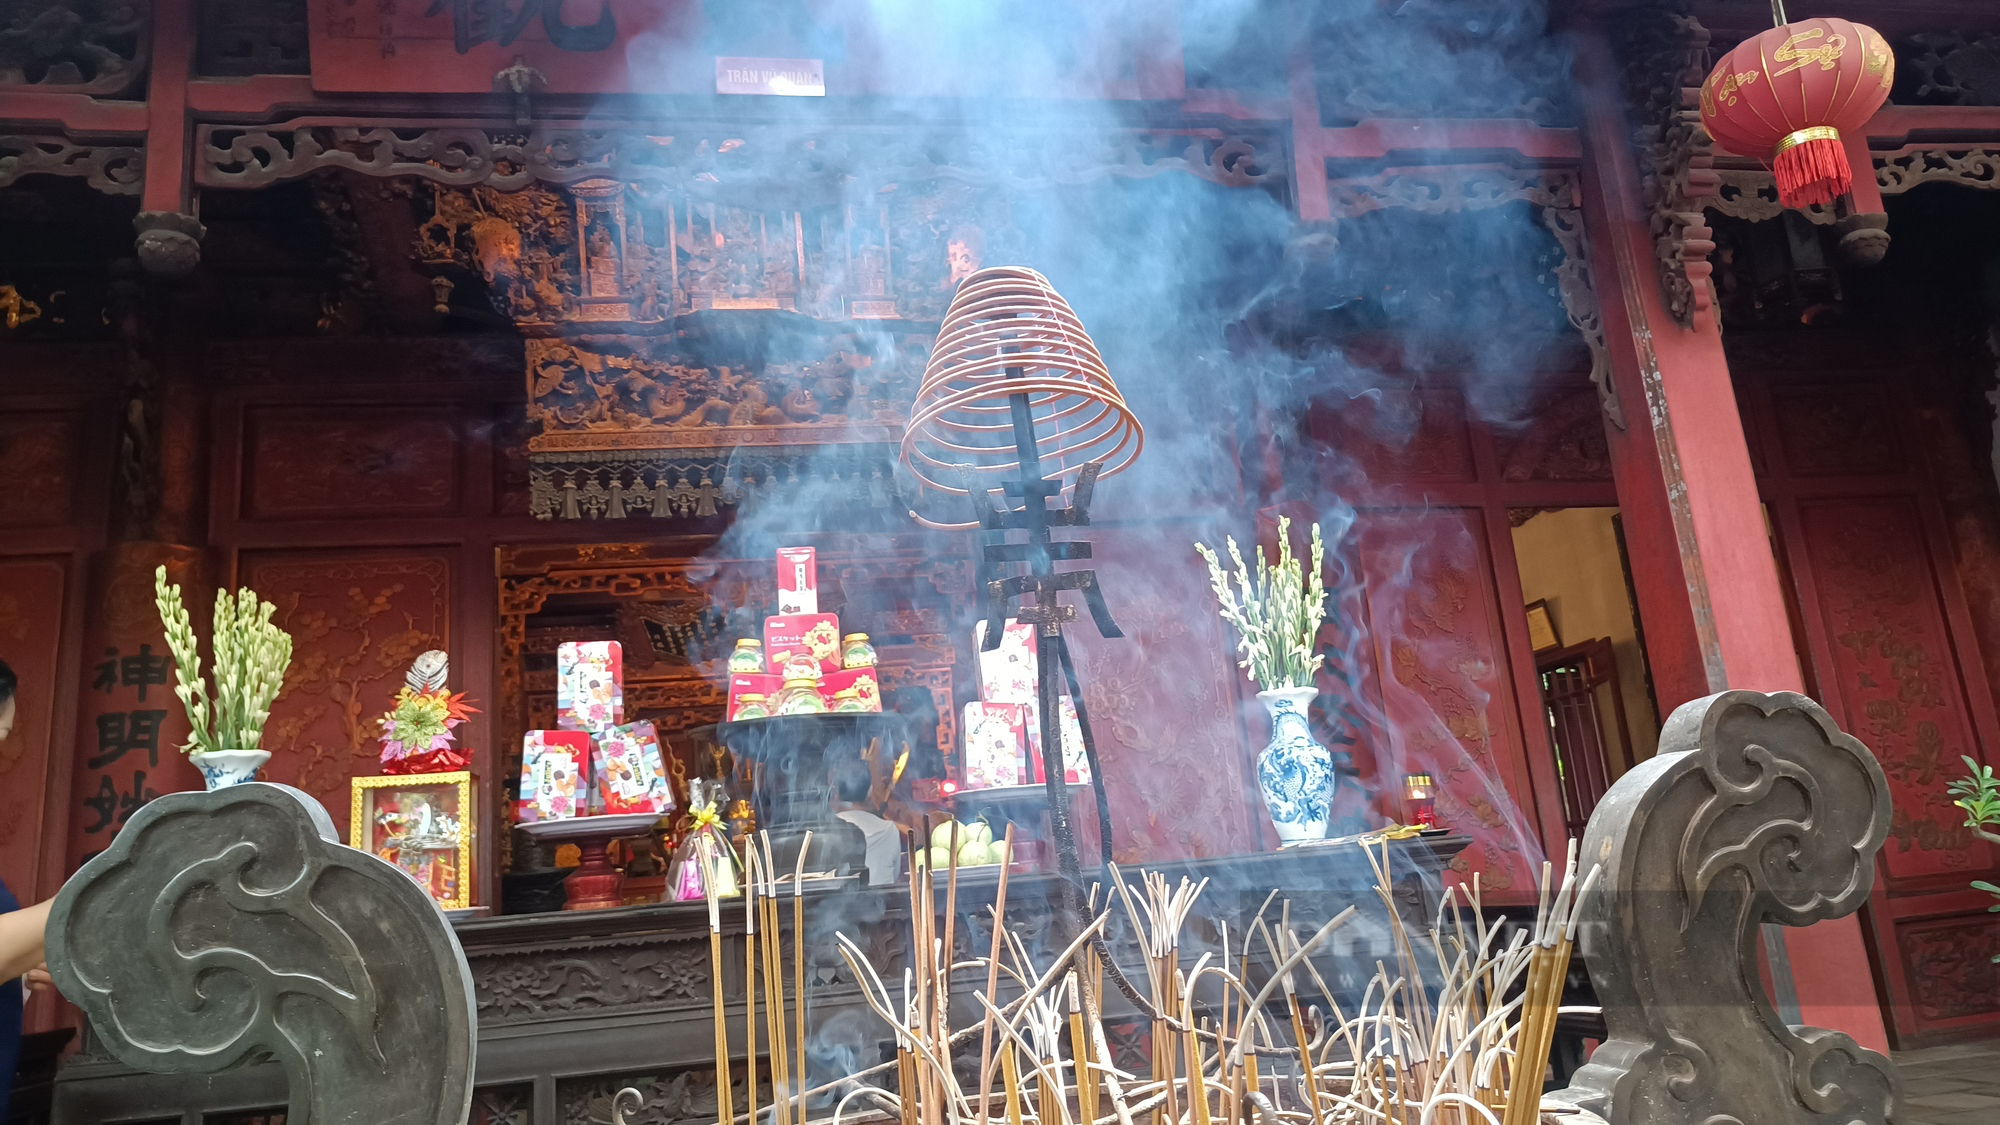 Mục sở thị ngôi đền cổ, linh thiêng bậc nhất ở Thủ đô Hà Nội - Ảnh 10.